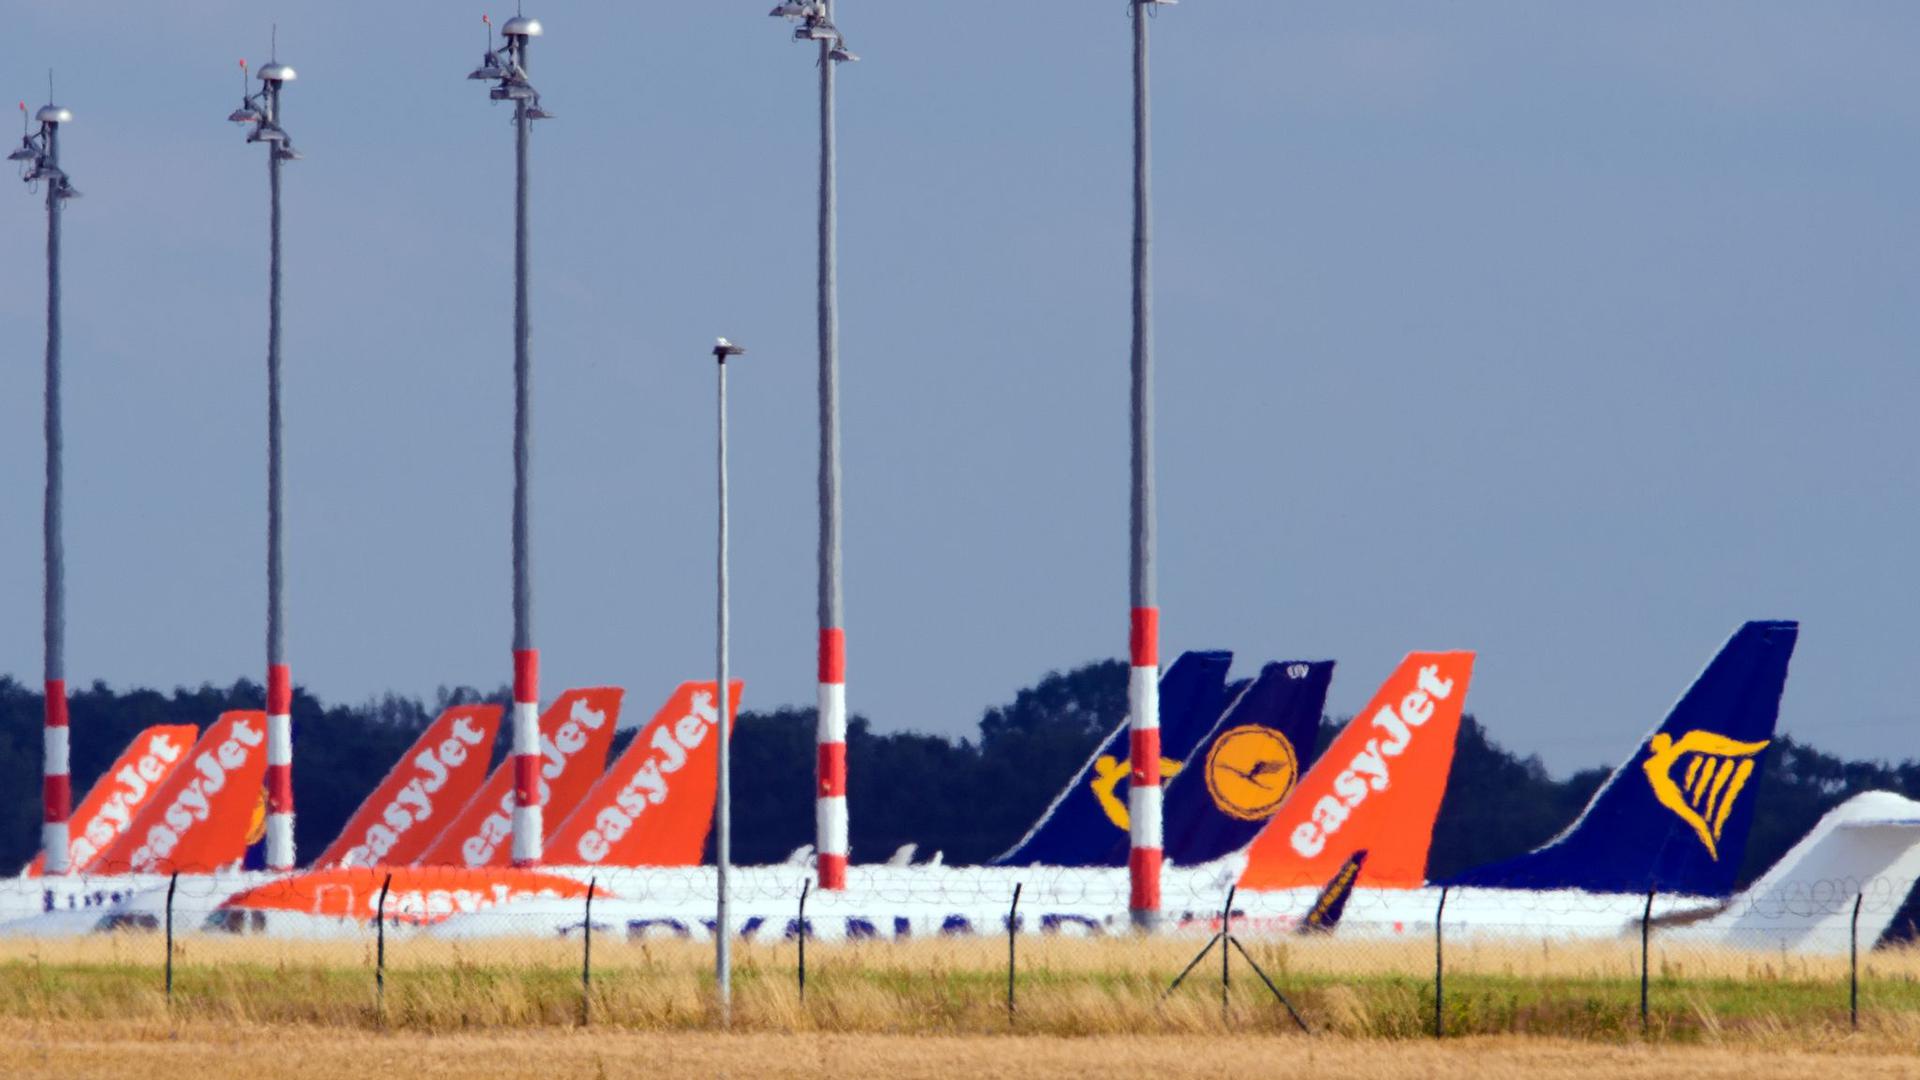 Flugzeuge von Easyjet, Lufthansa und Ryanair in Berlin.